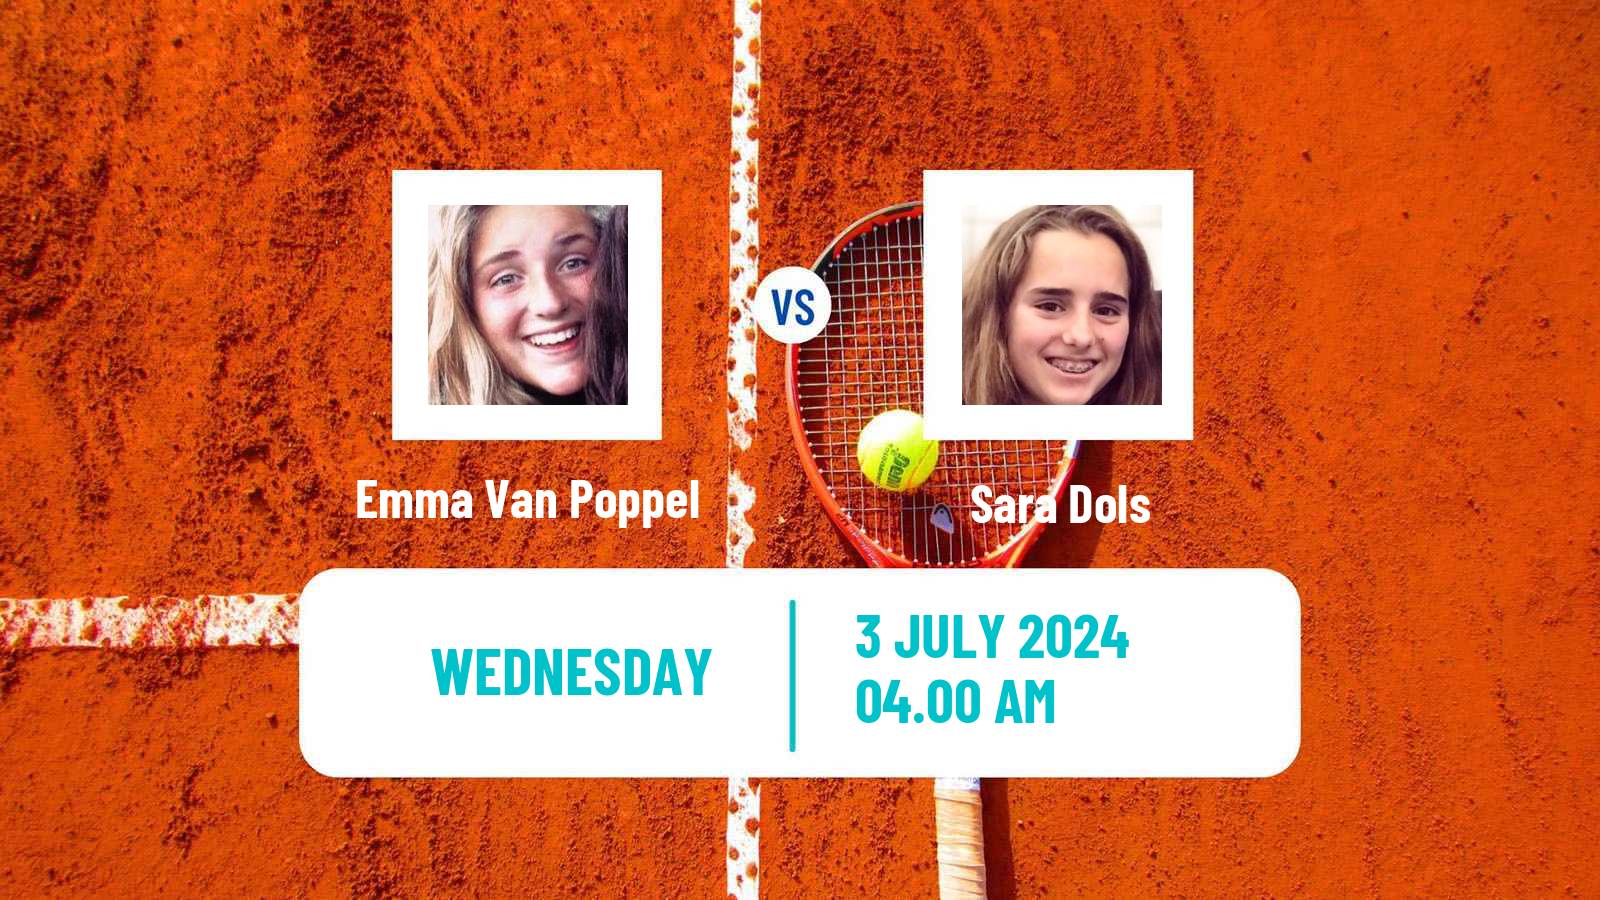 Tennis ITF W15 Galati 2 Women Emma Van Poppel - Sara Dols